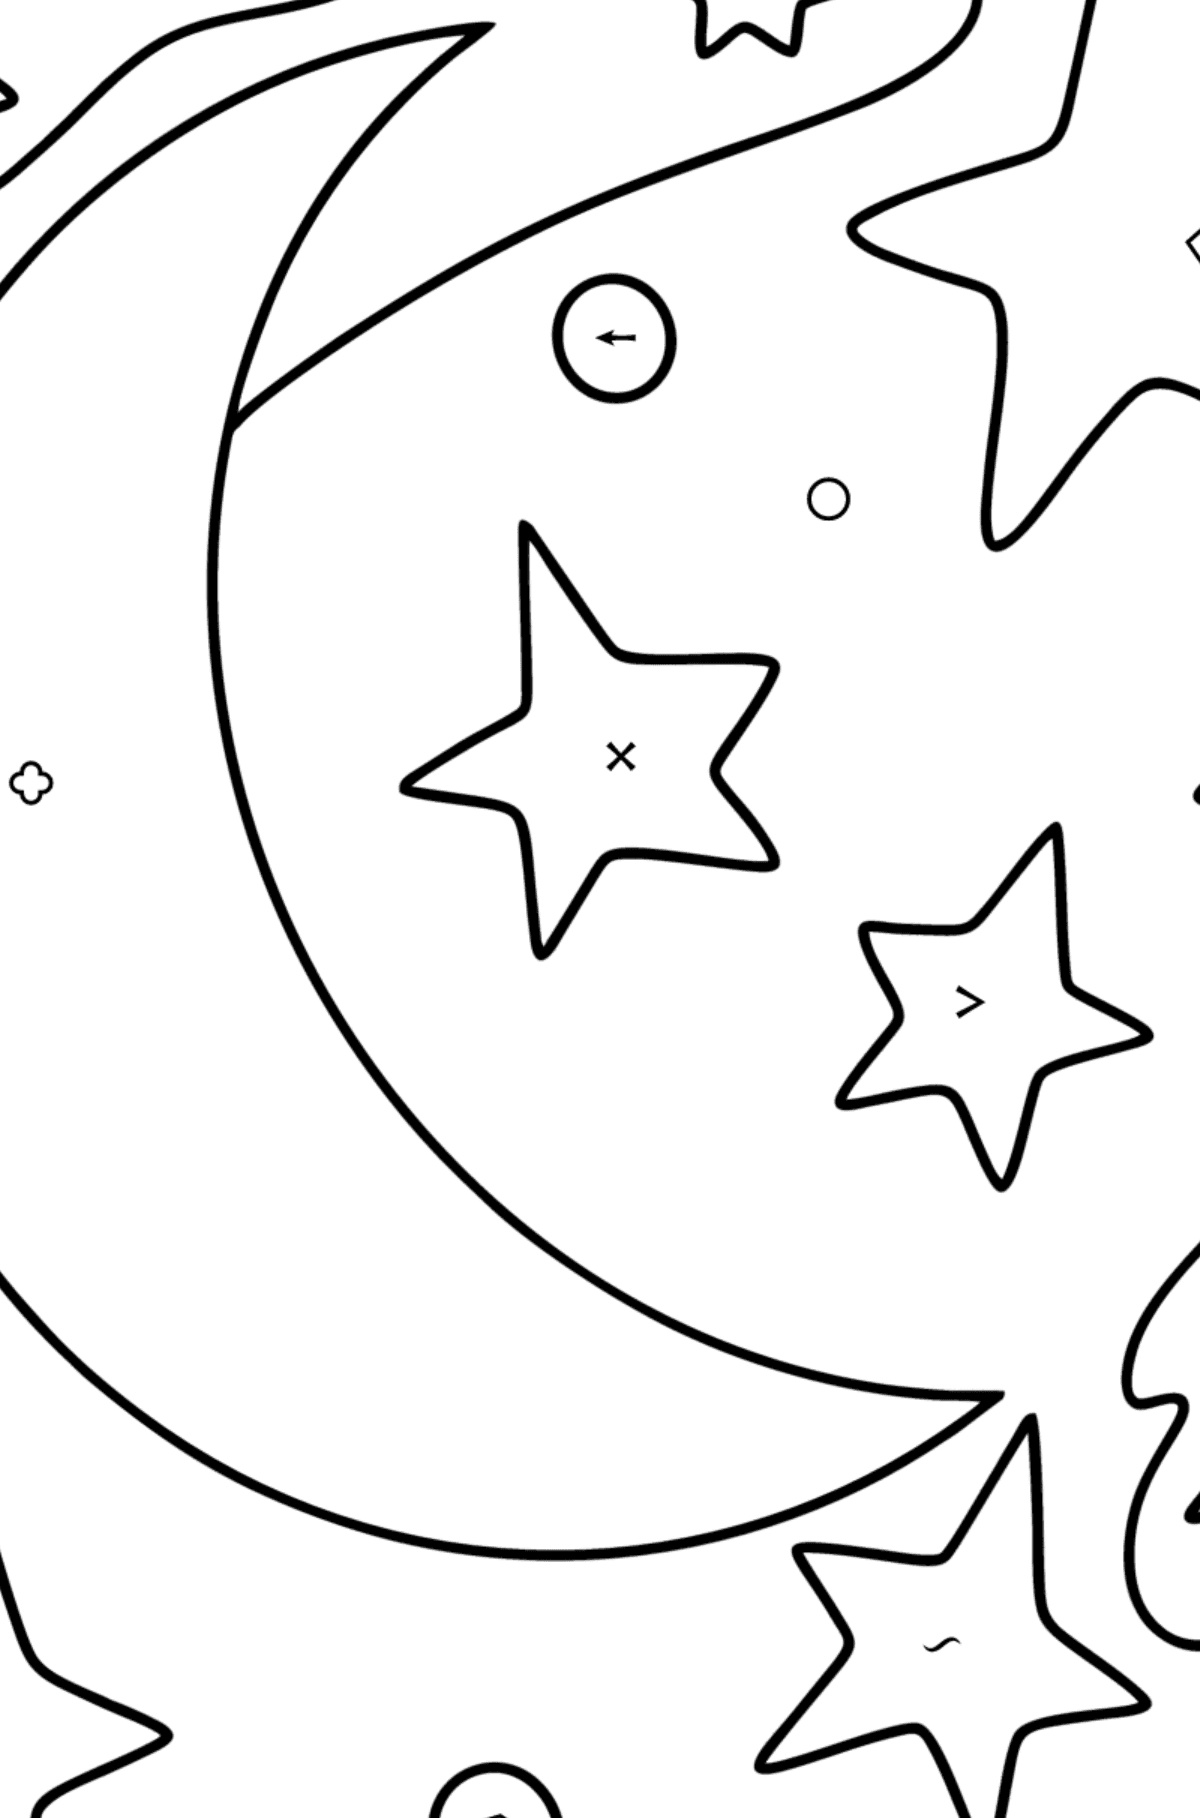 Månen og stjernene tegning til fargelegging - Fargelegge etter symboler og geometriske former for barn